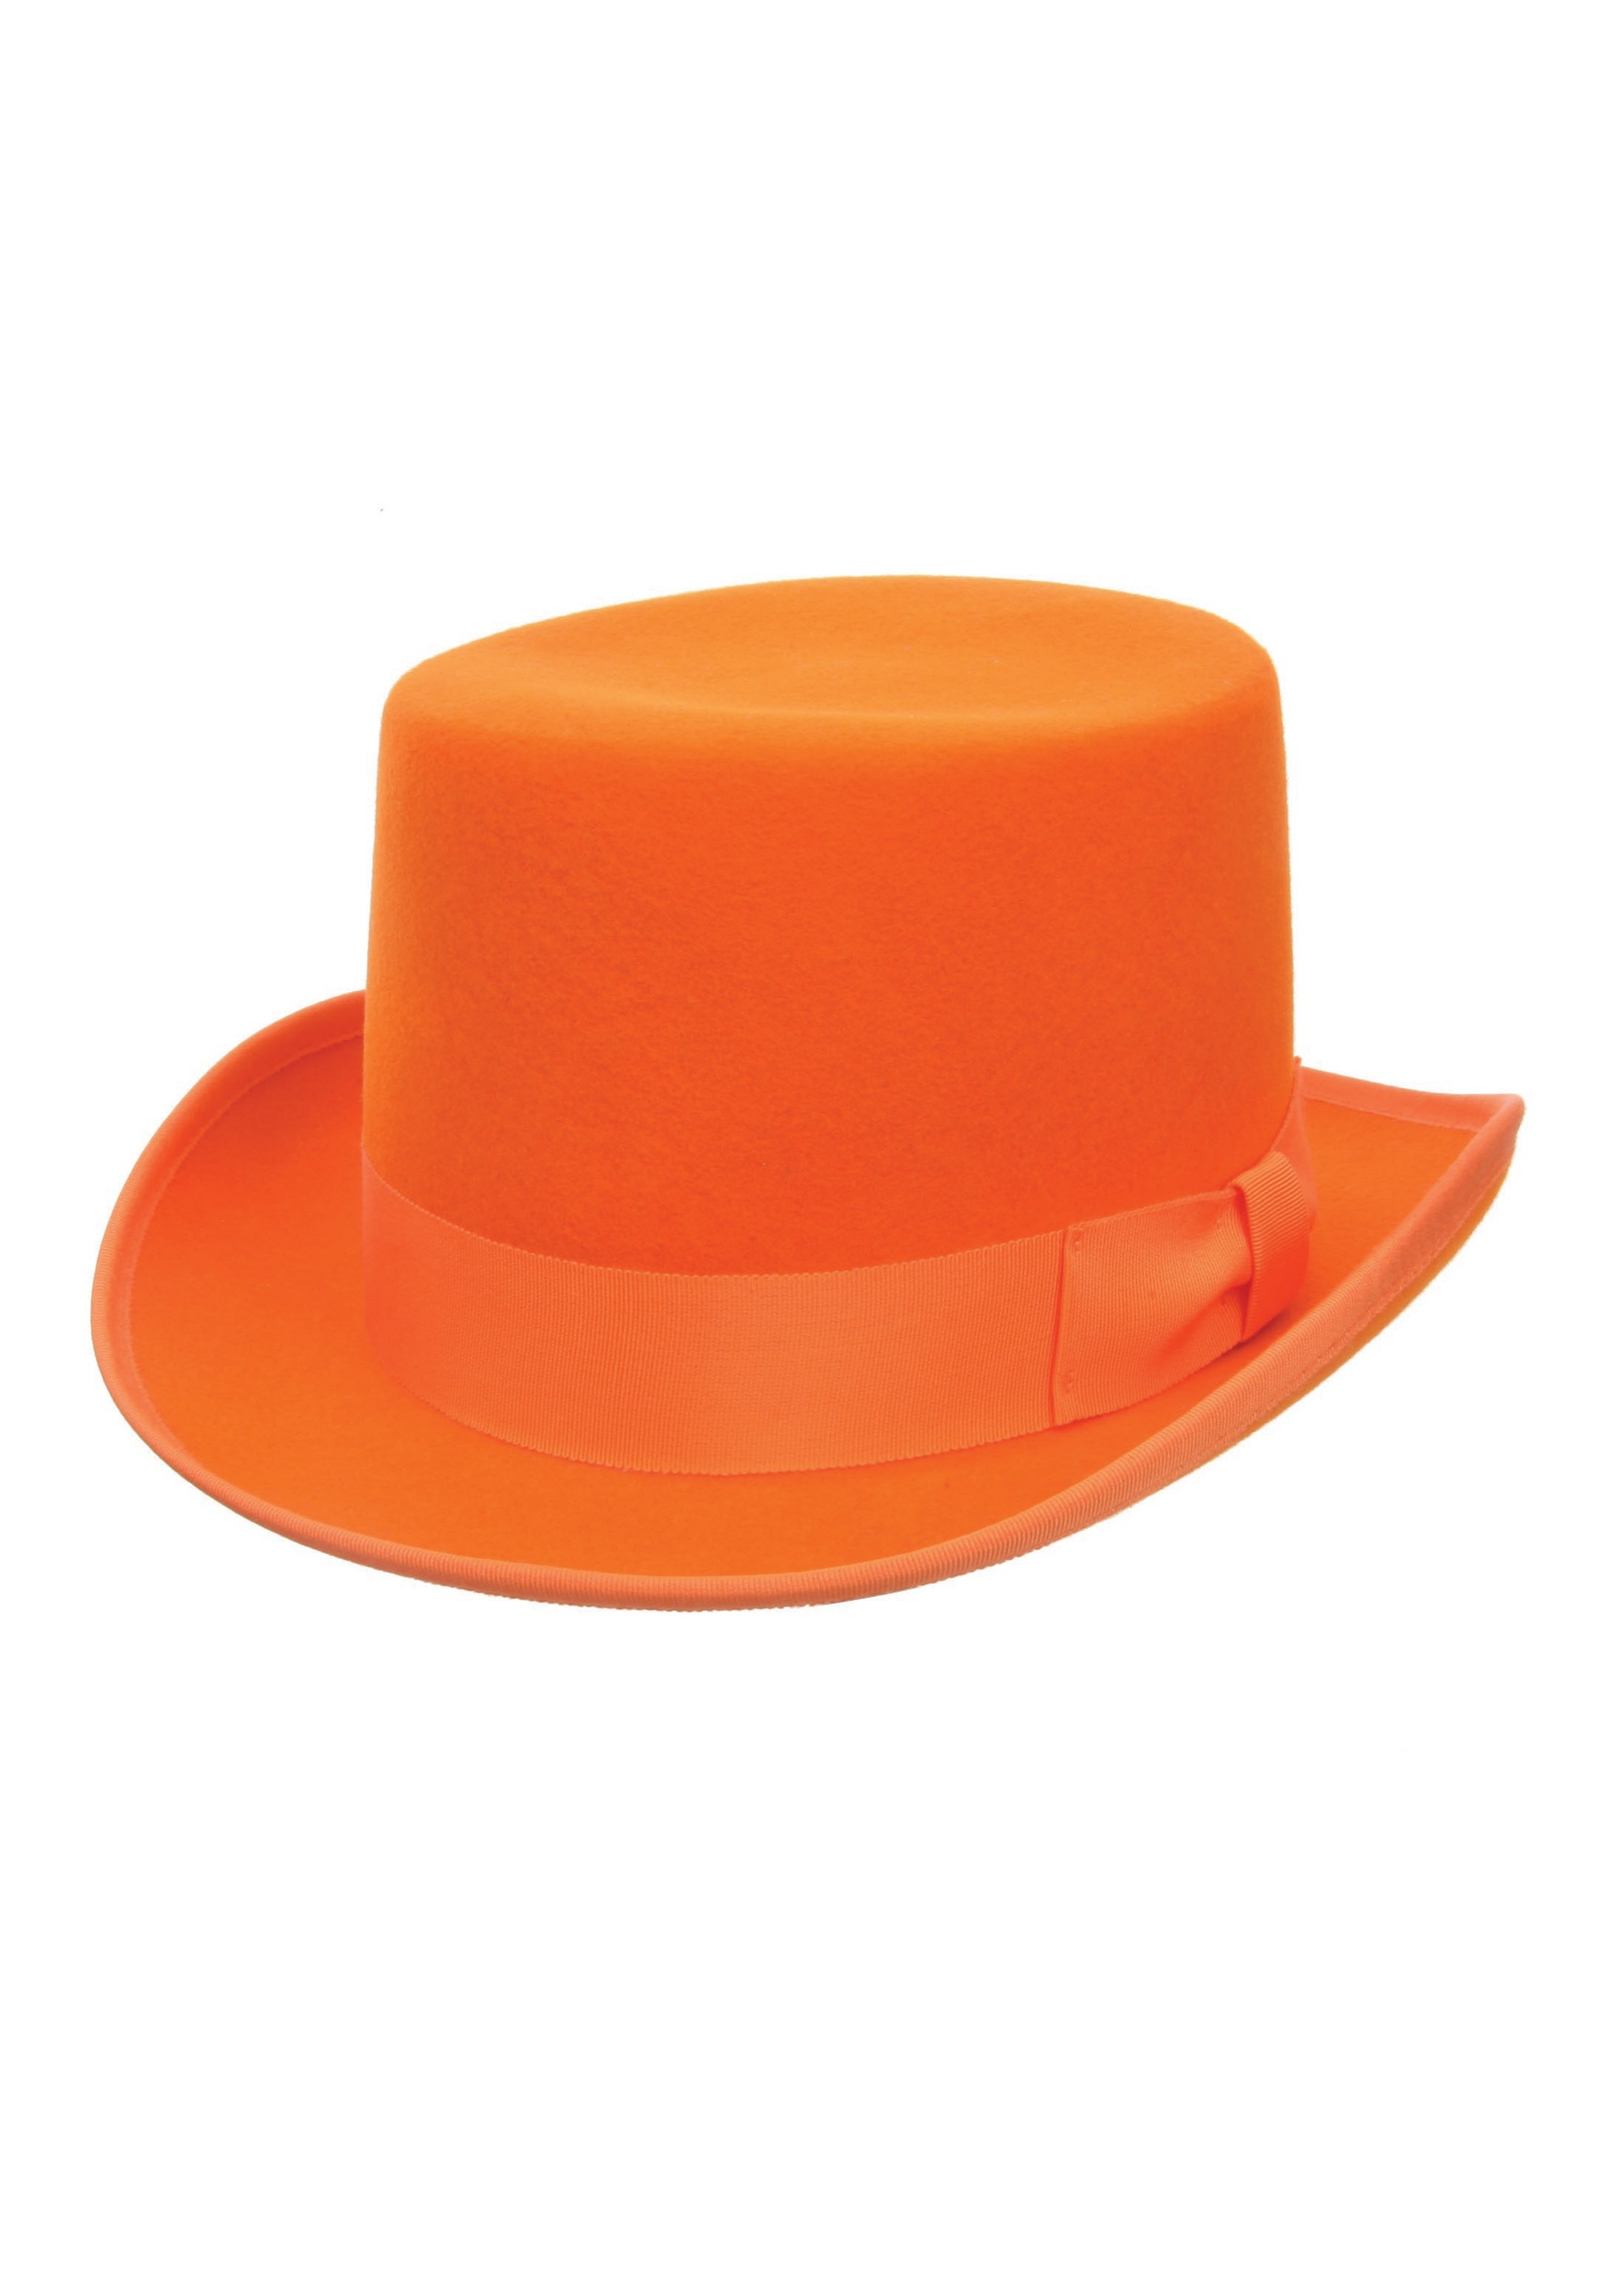 Upside Down Top Hat Vector Orange Wool Top Hat